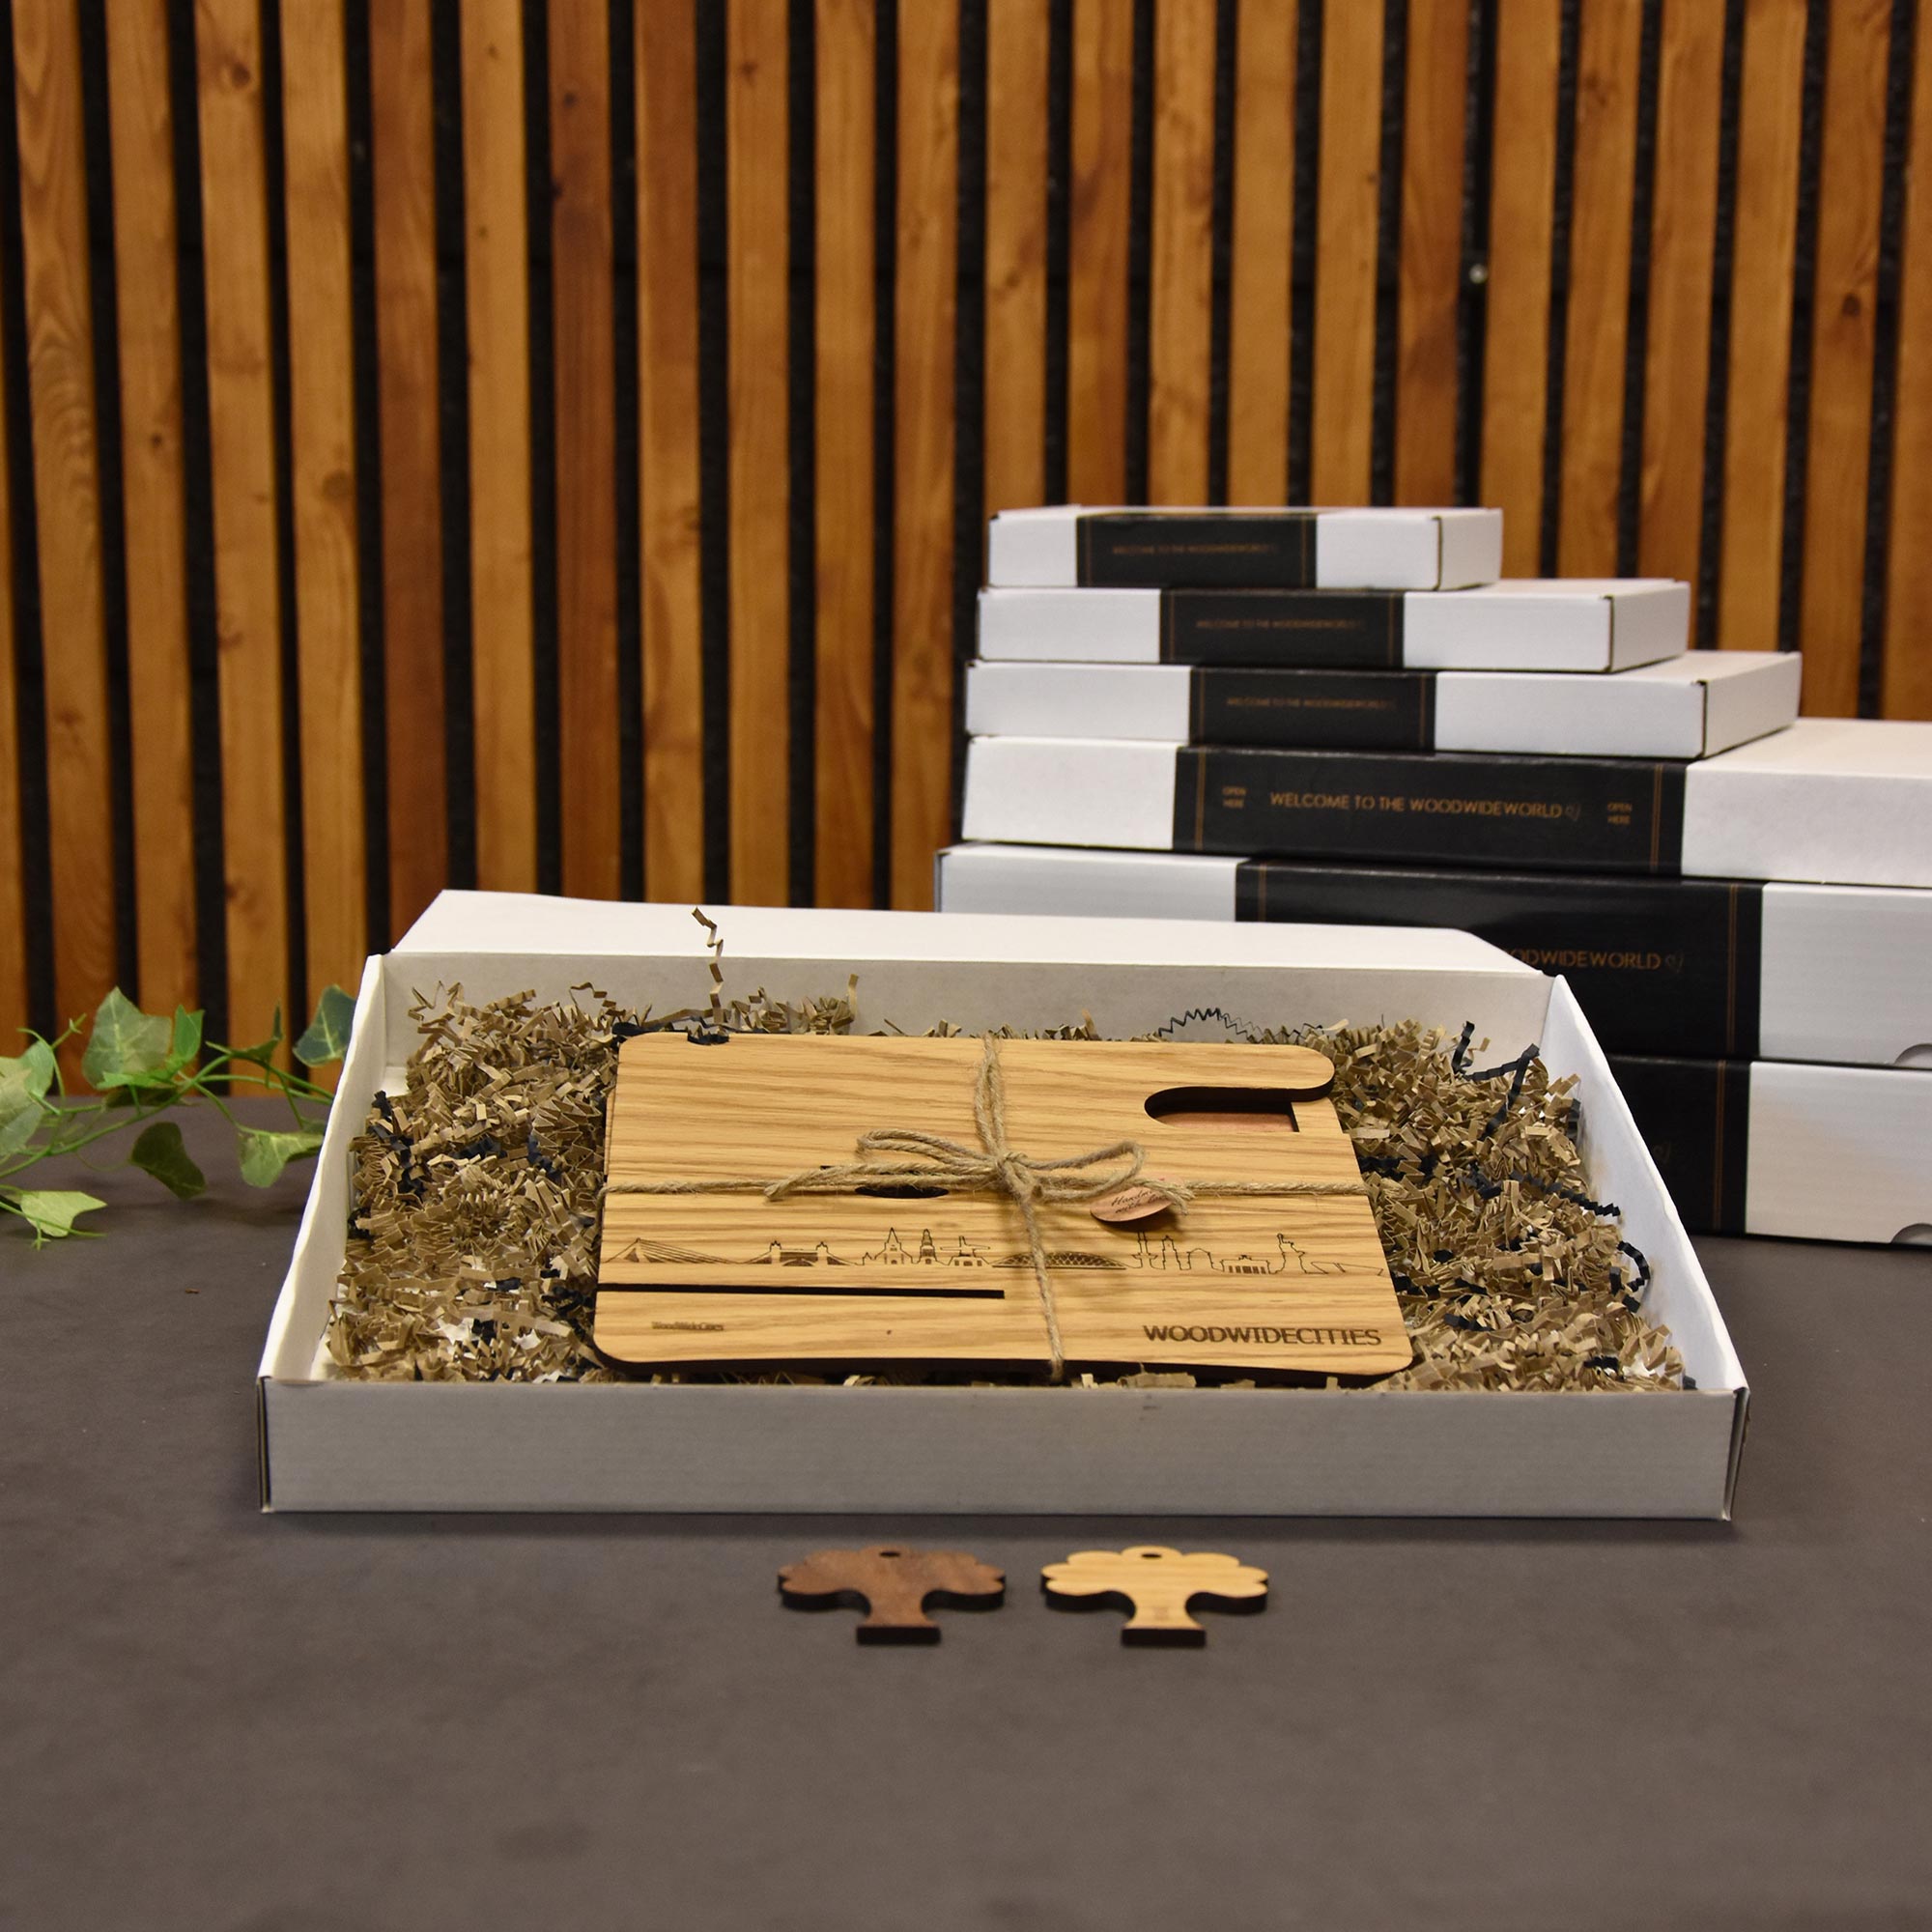 Skyline Desk Organizer Emmeloord houten cadeau decoratie relatiegeschenk van WoodWideCities